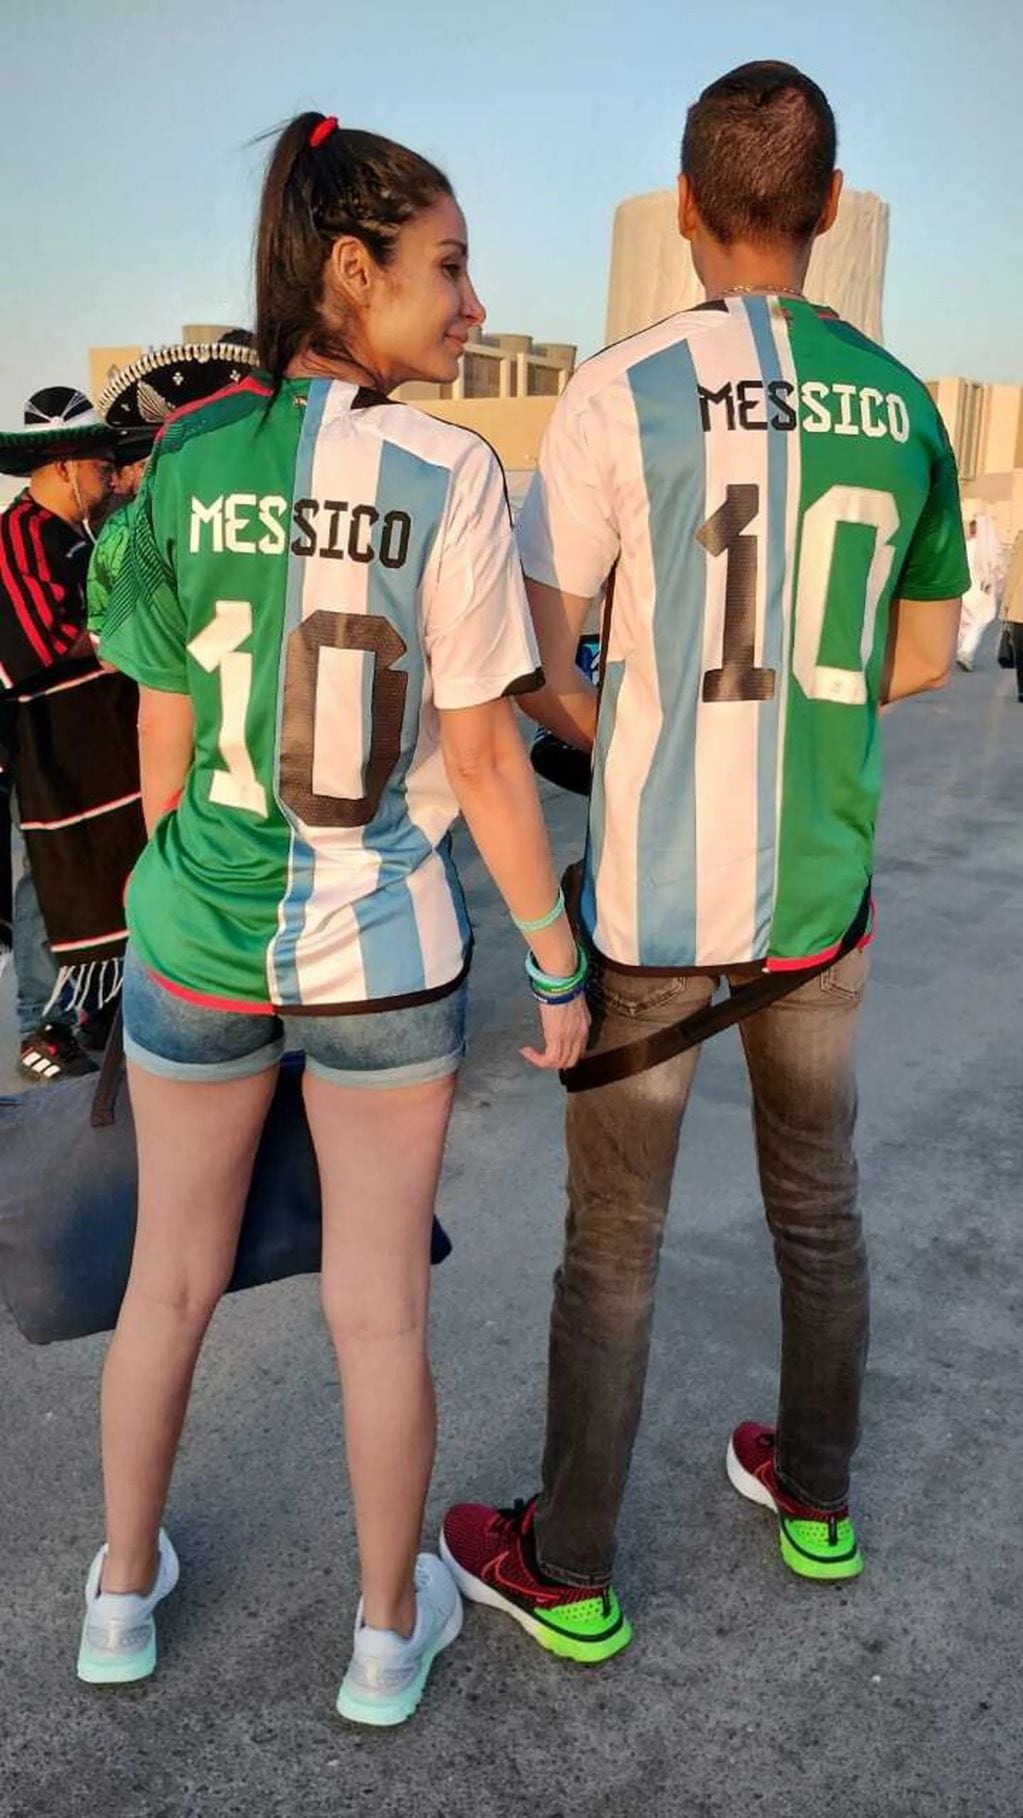 "Messico", la propuesta de una pareja mexicana para alentar a su selección y al capitán argentino. (Foto: TN).